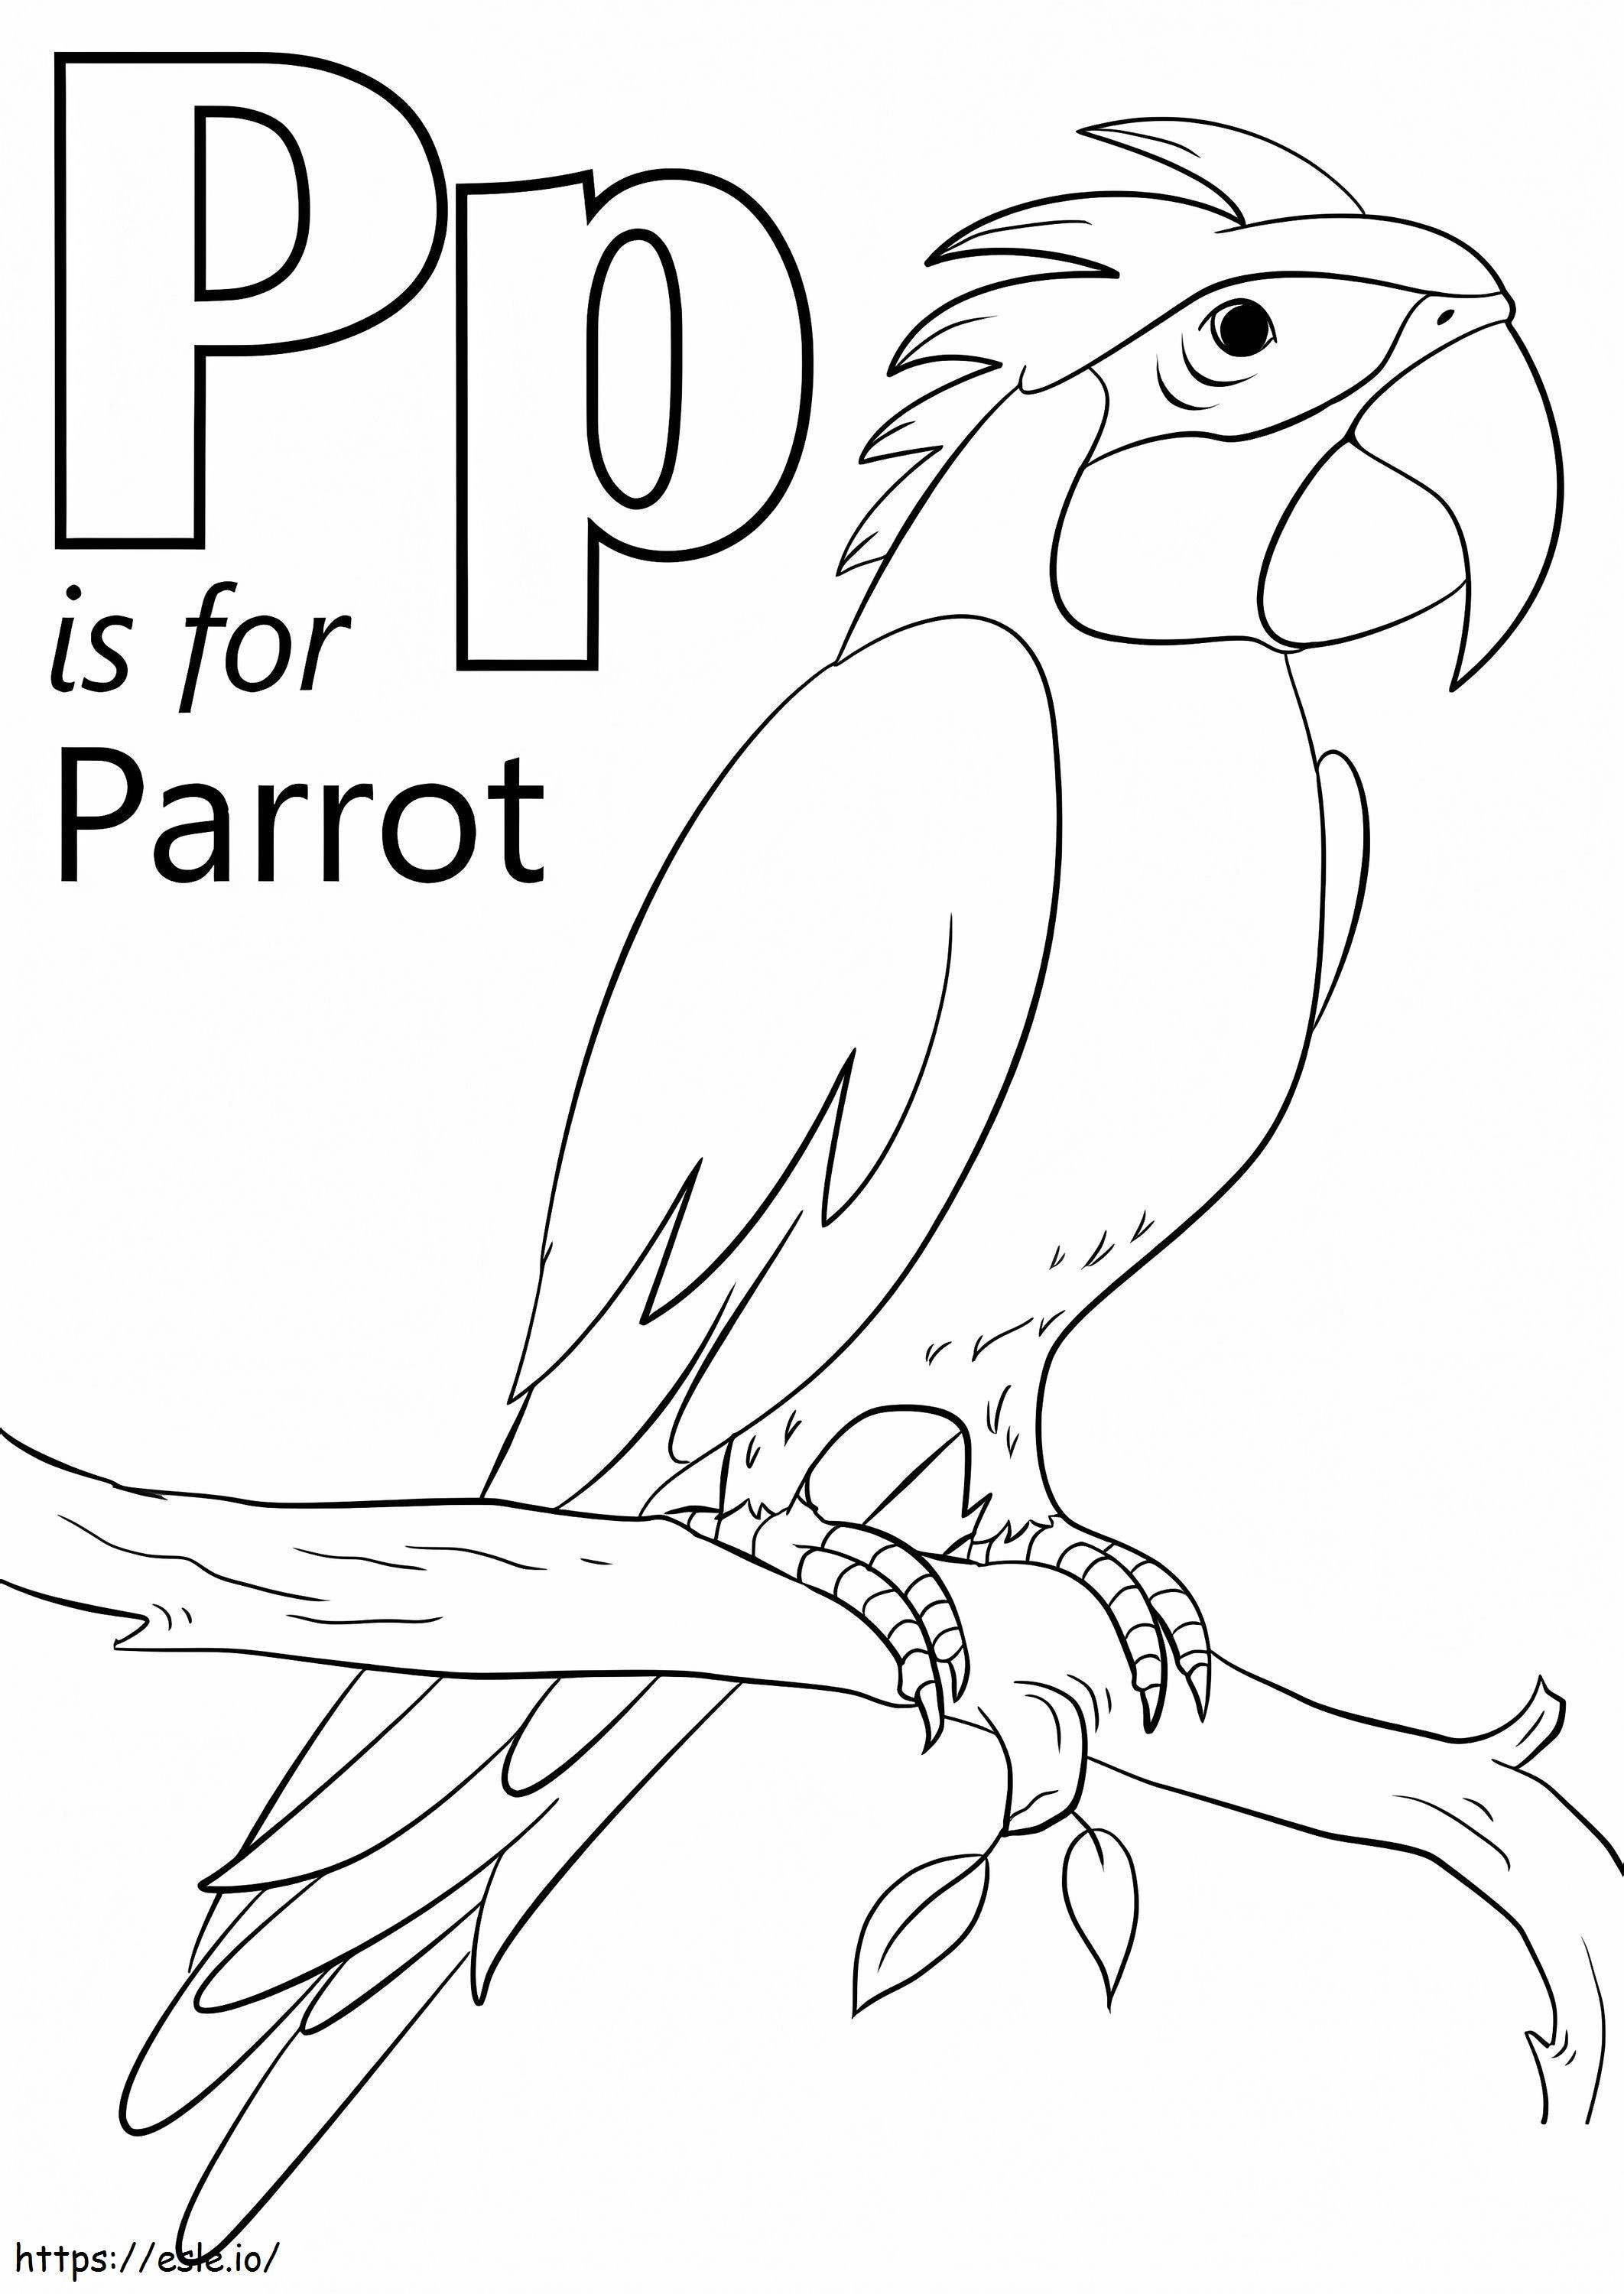 Parrot Letter P coloring page